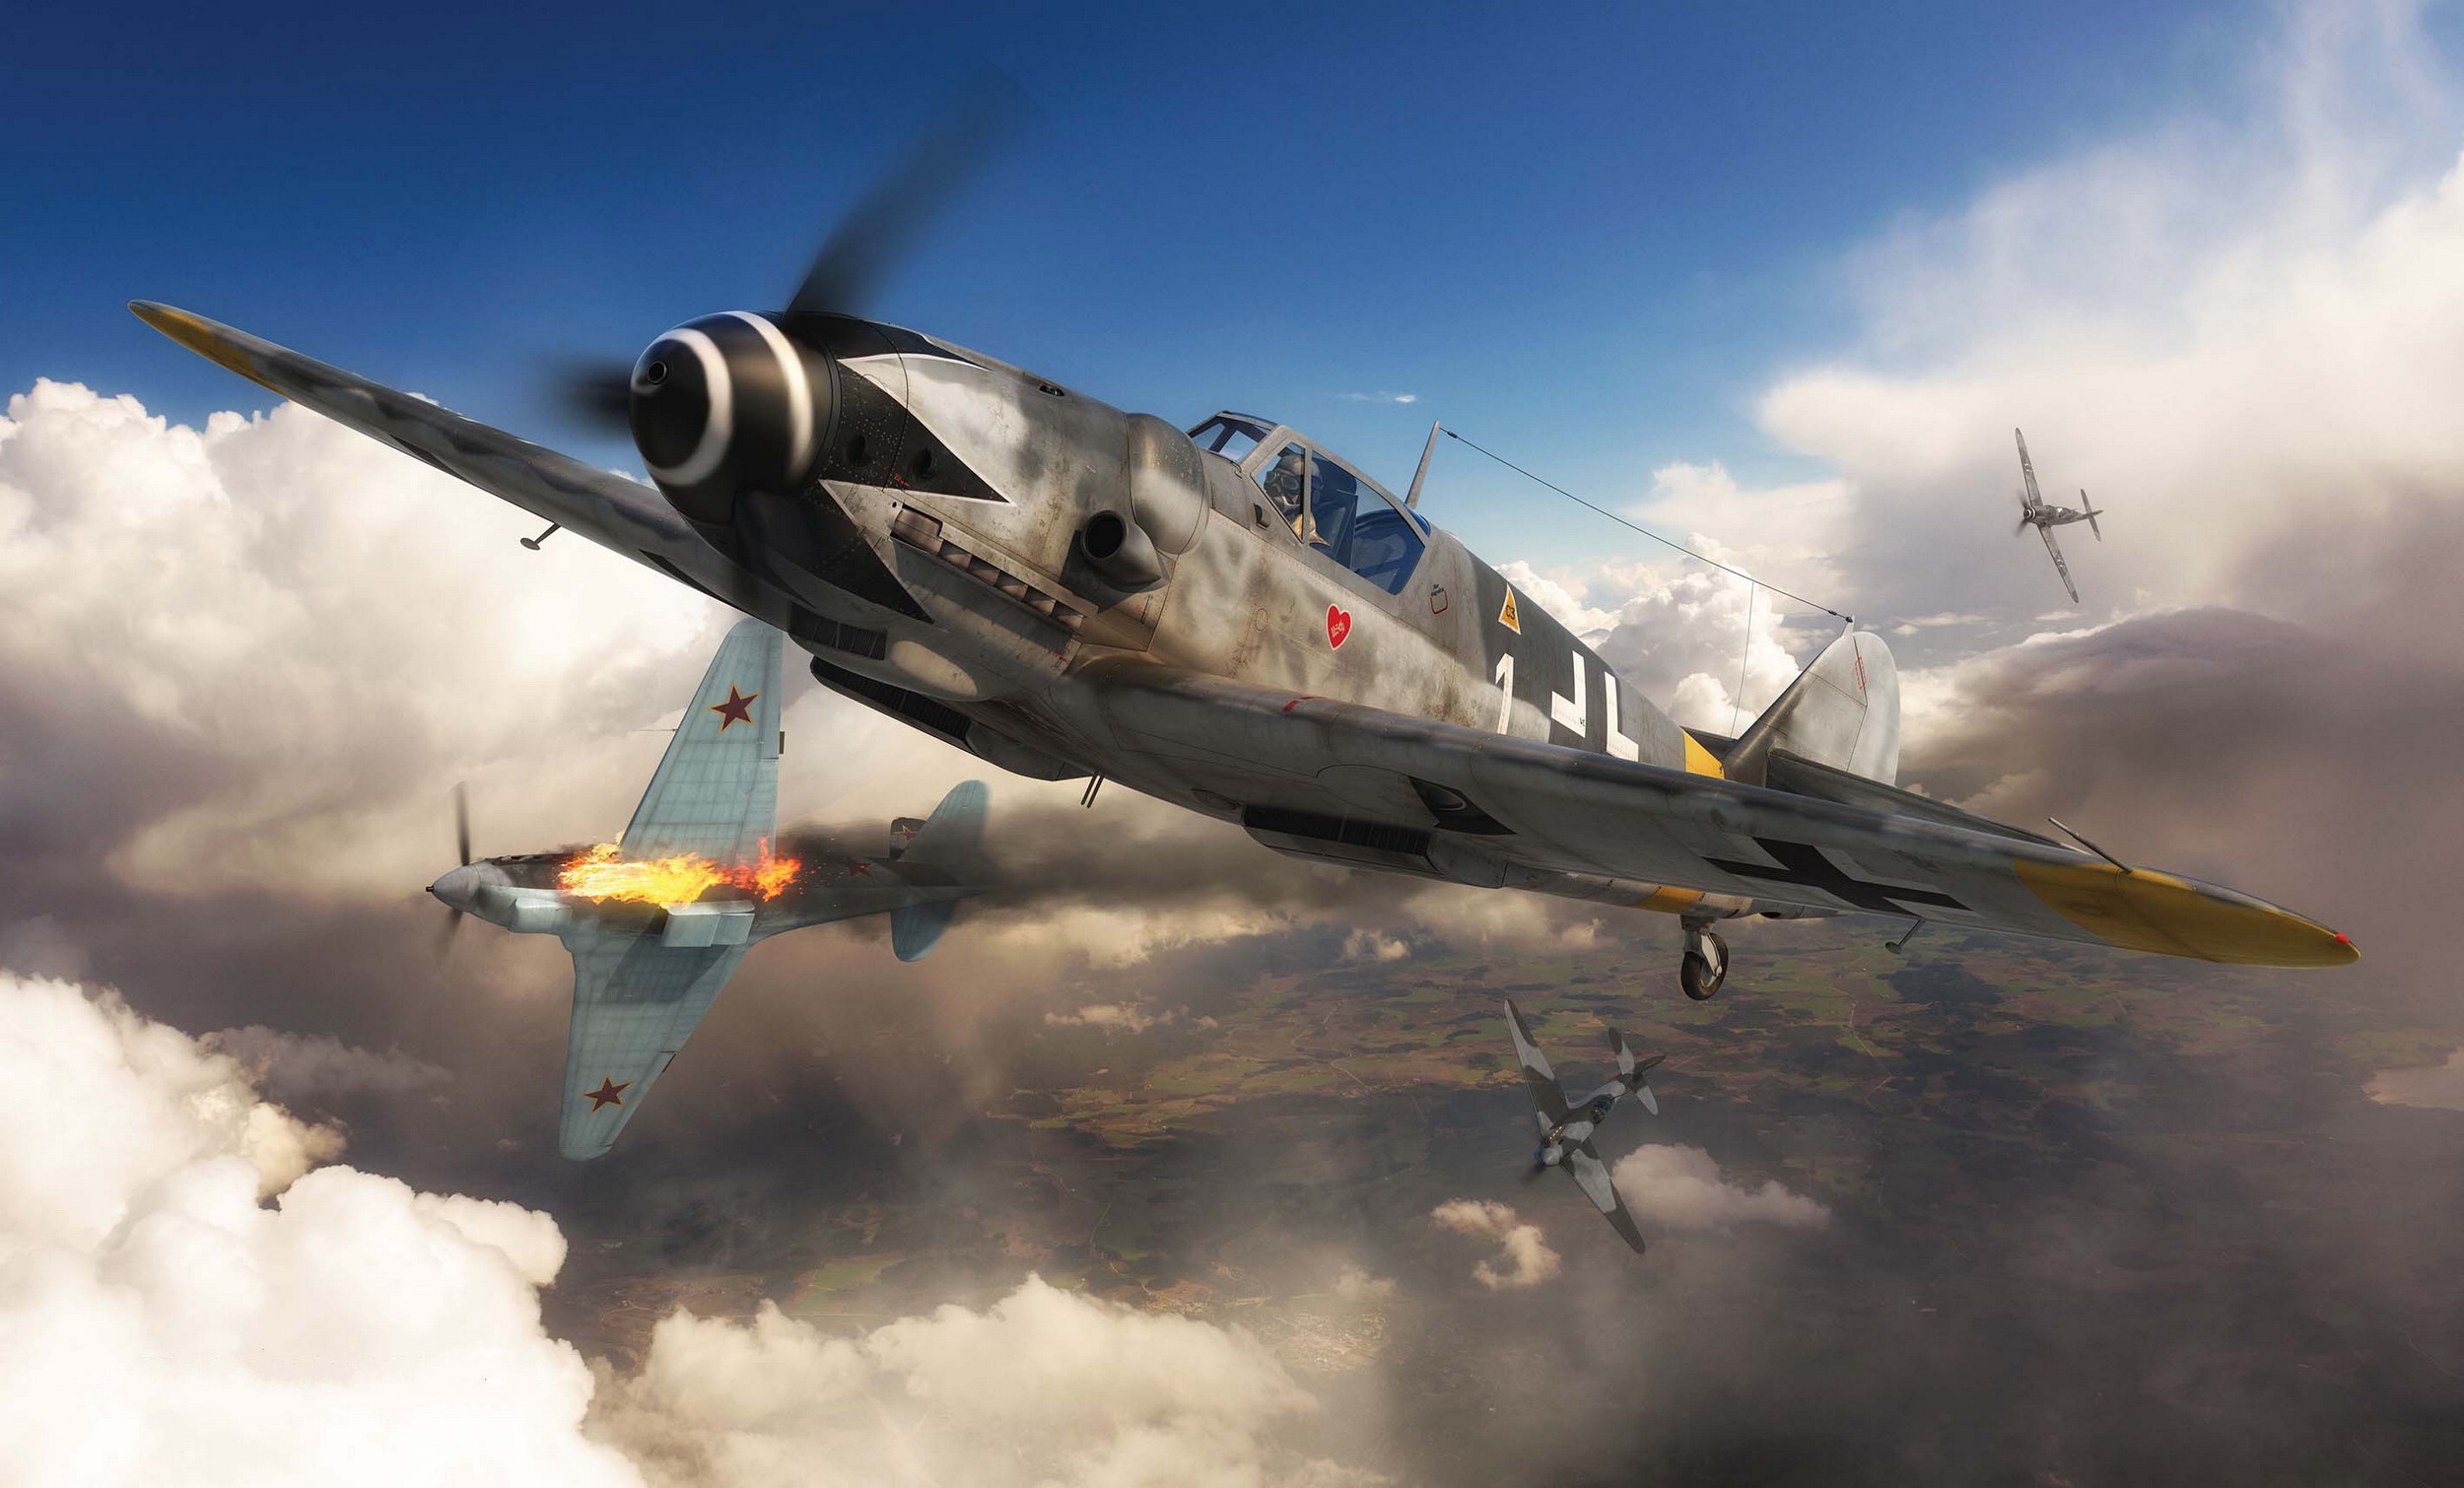 Wallpaper, World War II, aircraft, airplane, Germany, Luftwaffe, war, Messerschmitt Bf 109 2500x1510